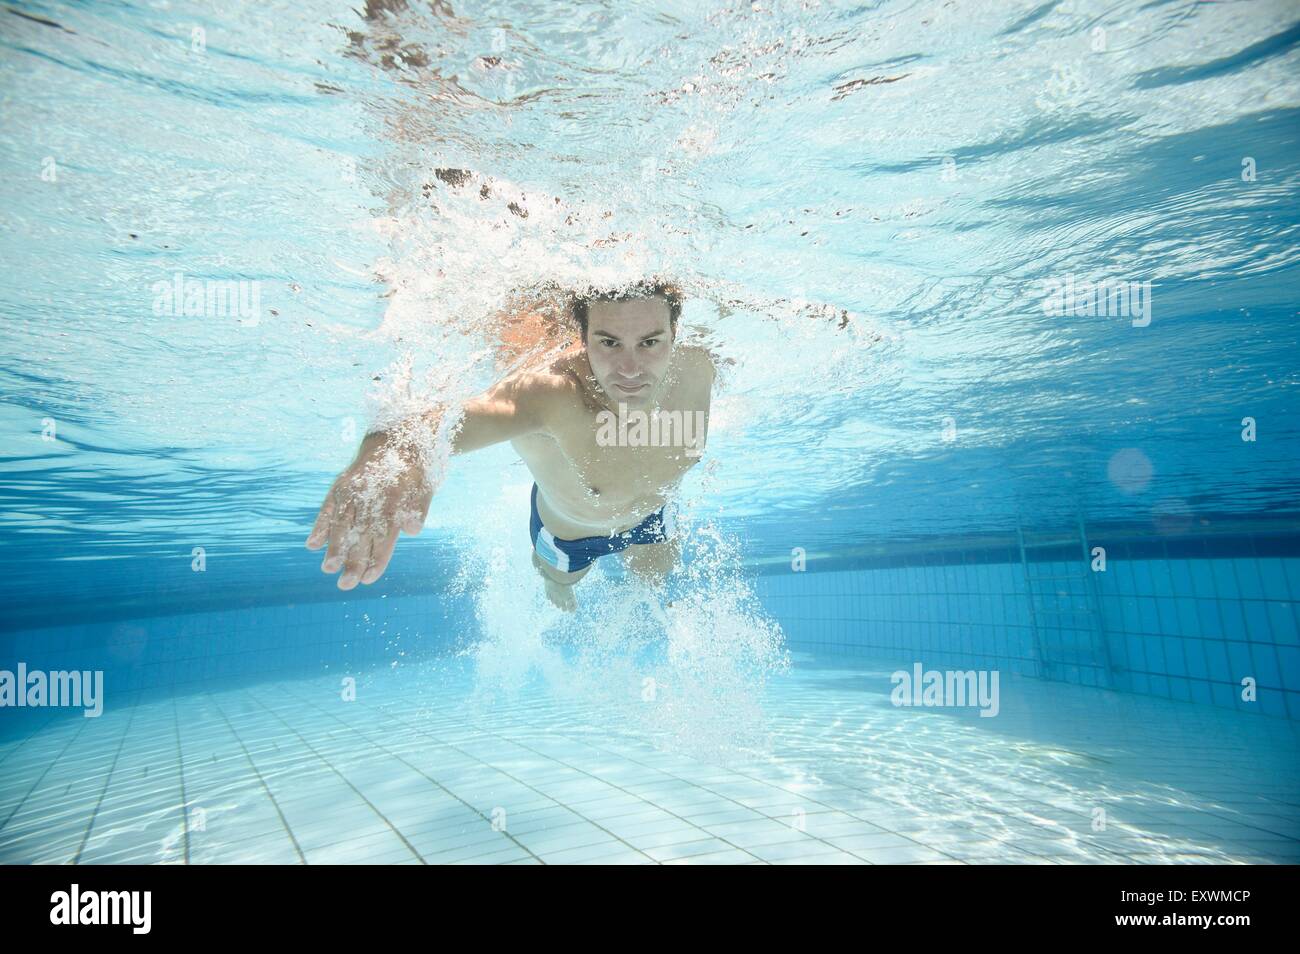 L'homme nage sous l'eau dans une baignoire en plein air Banque D'Images